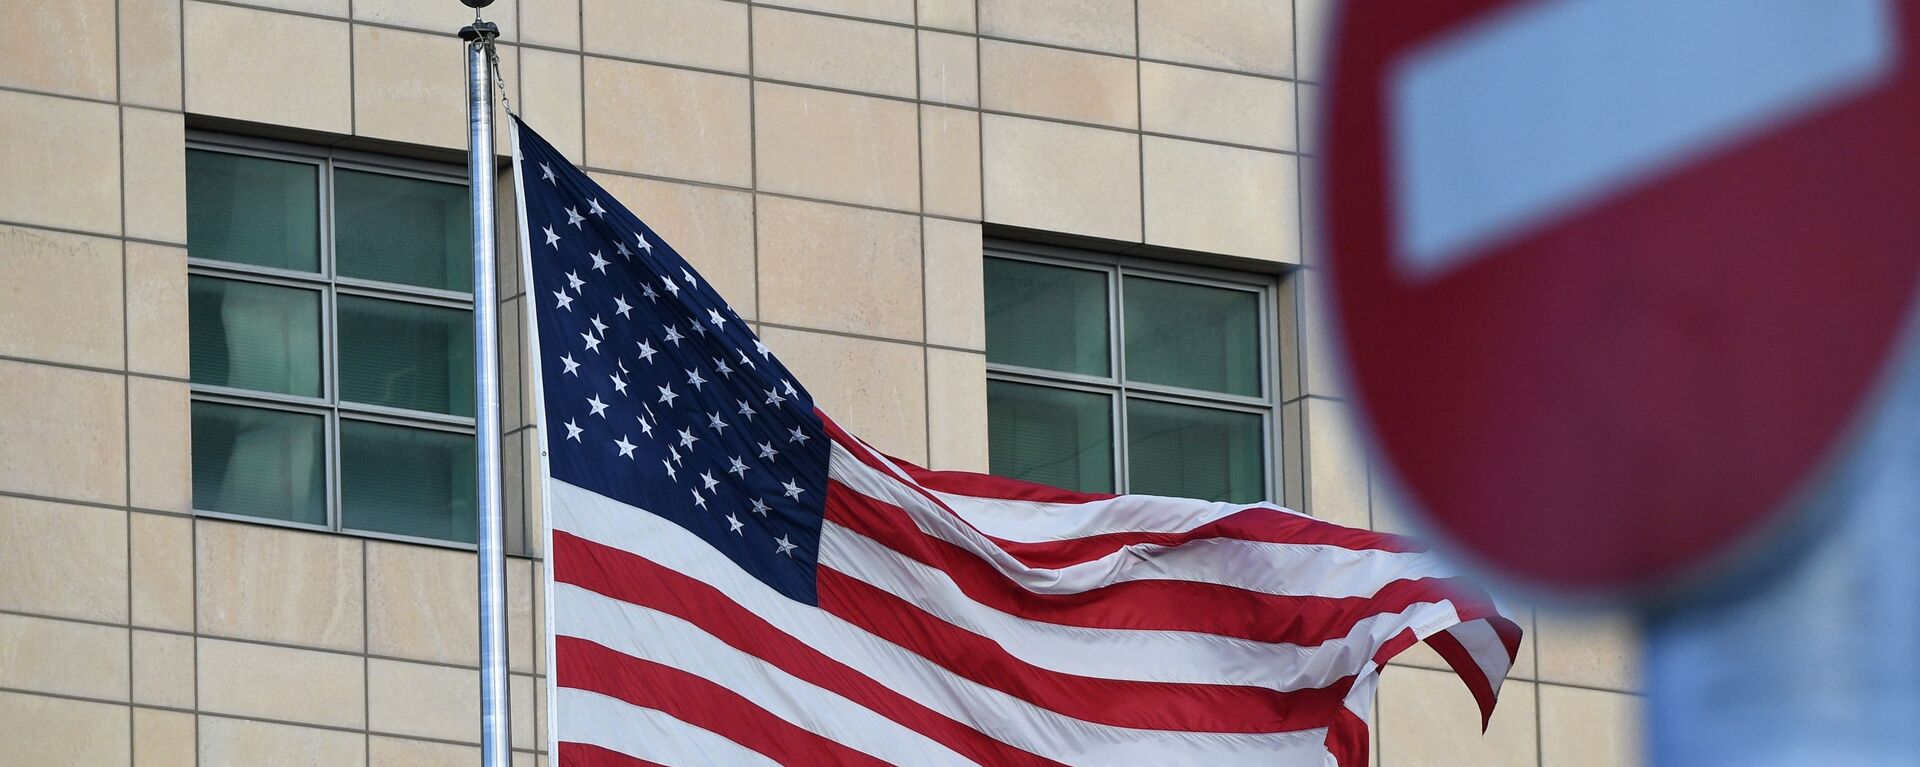 Государственный флаг США у американского посольства в Москве - Sputnik Латвия, 1920, 26.12.2021